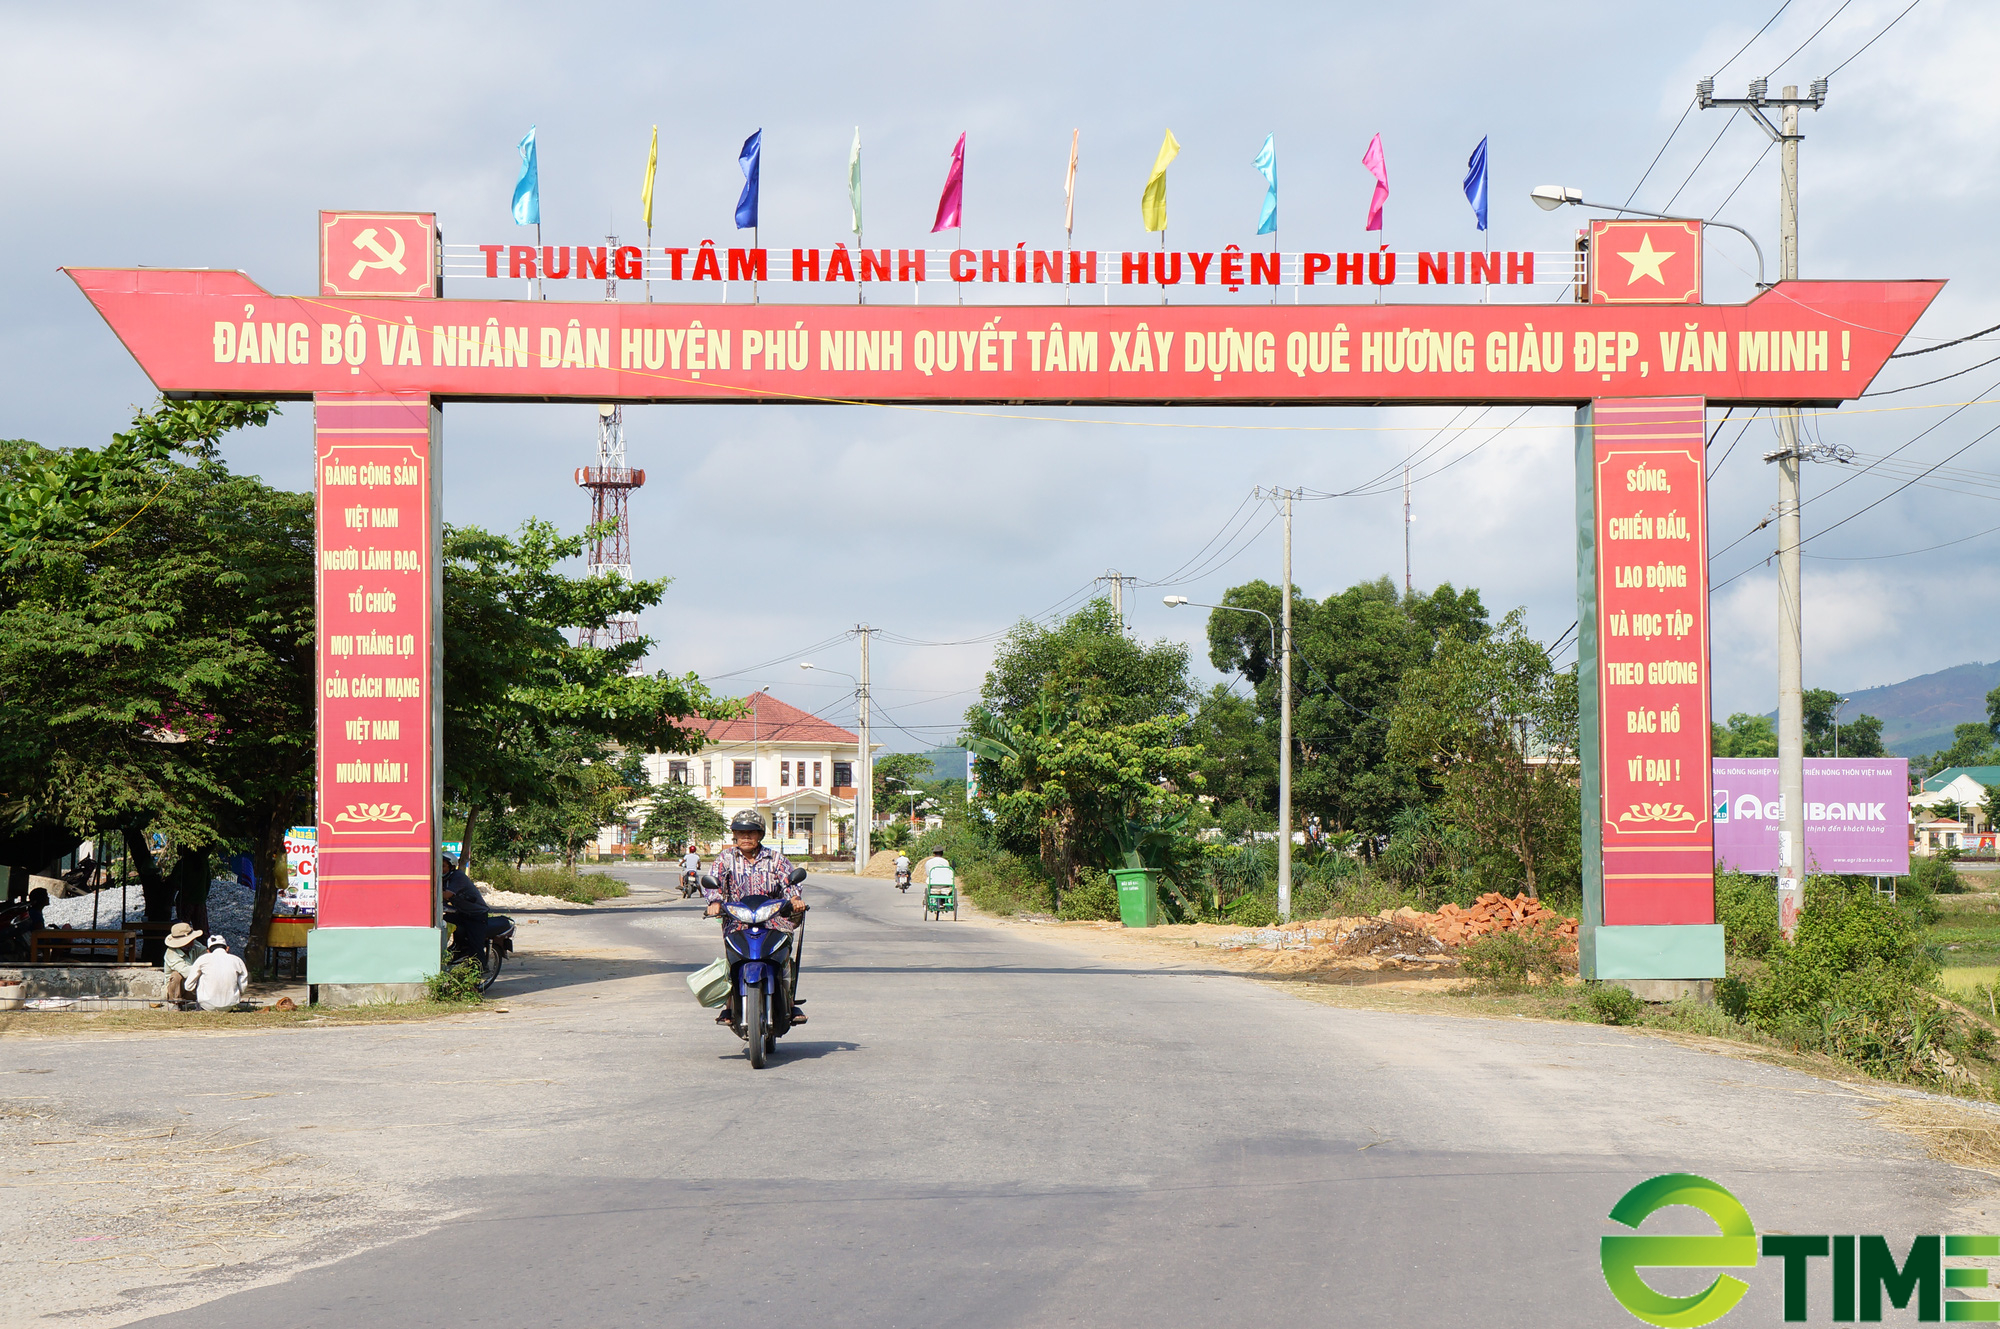 Quảng Nam: Huyện Phú Ninh chuyển mình, thu nhập người dân nâng cao rõ rệt - Ảnh 1.